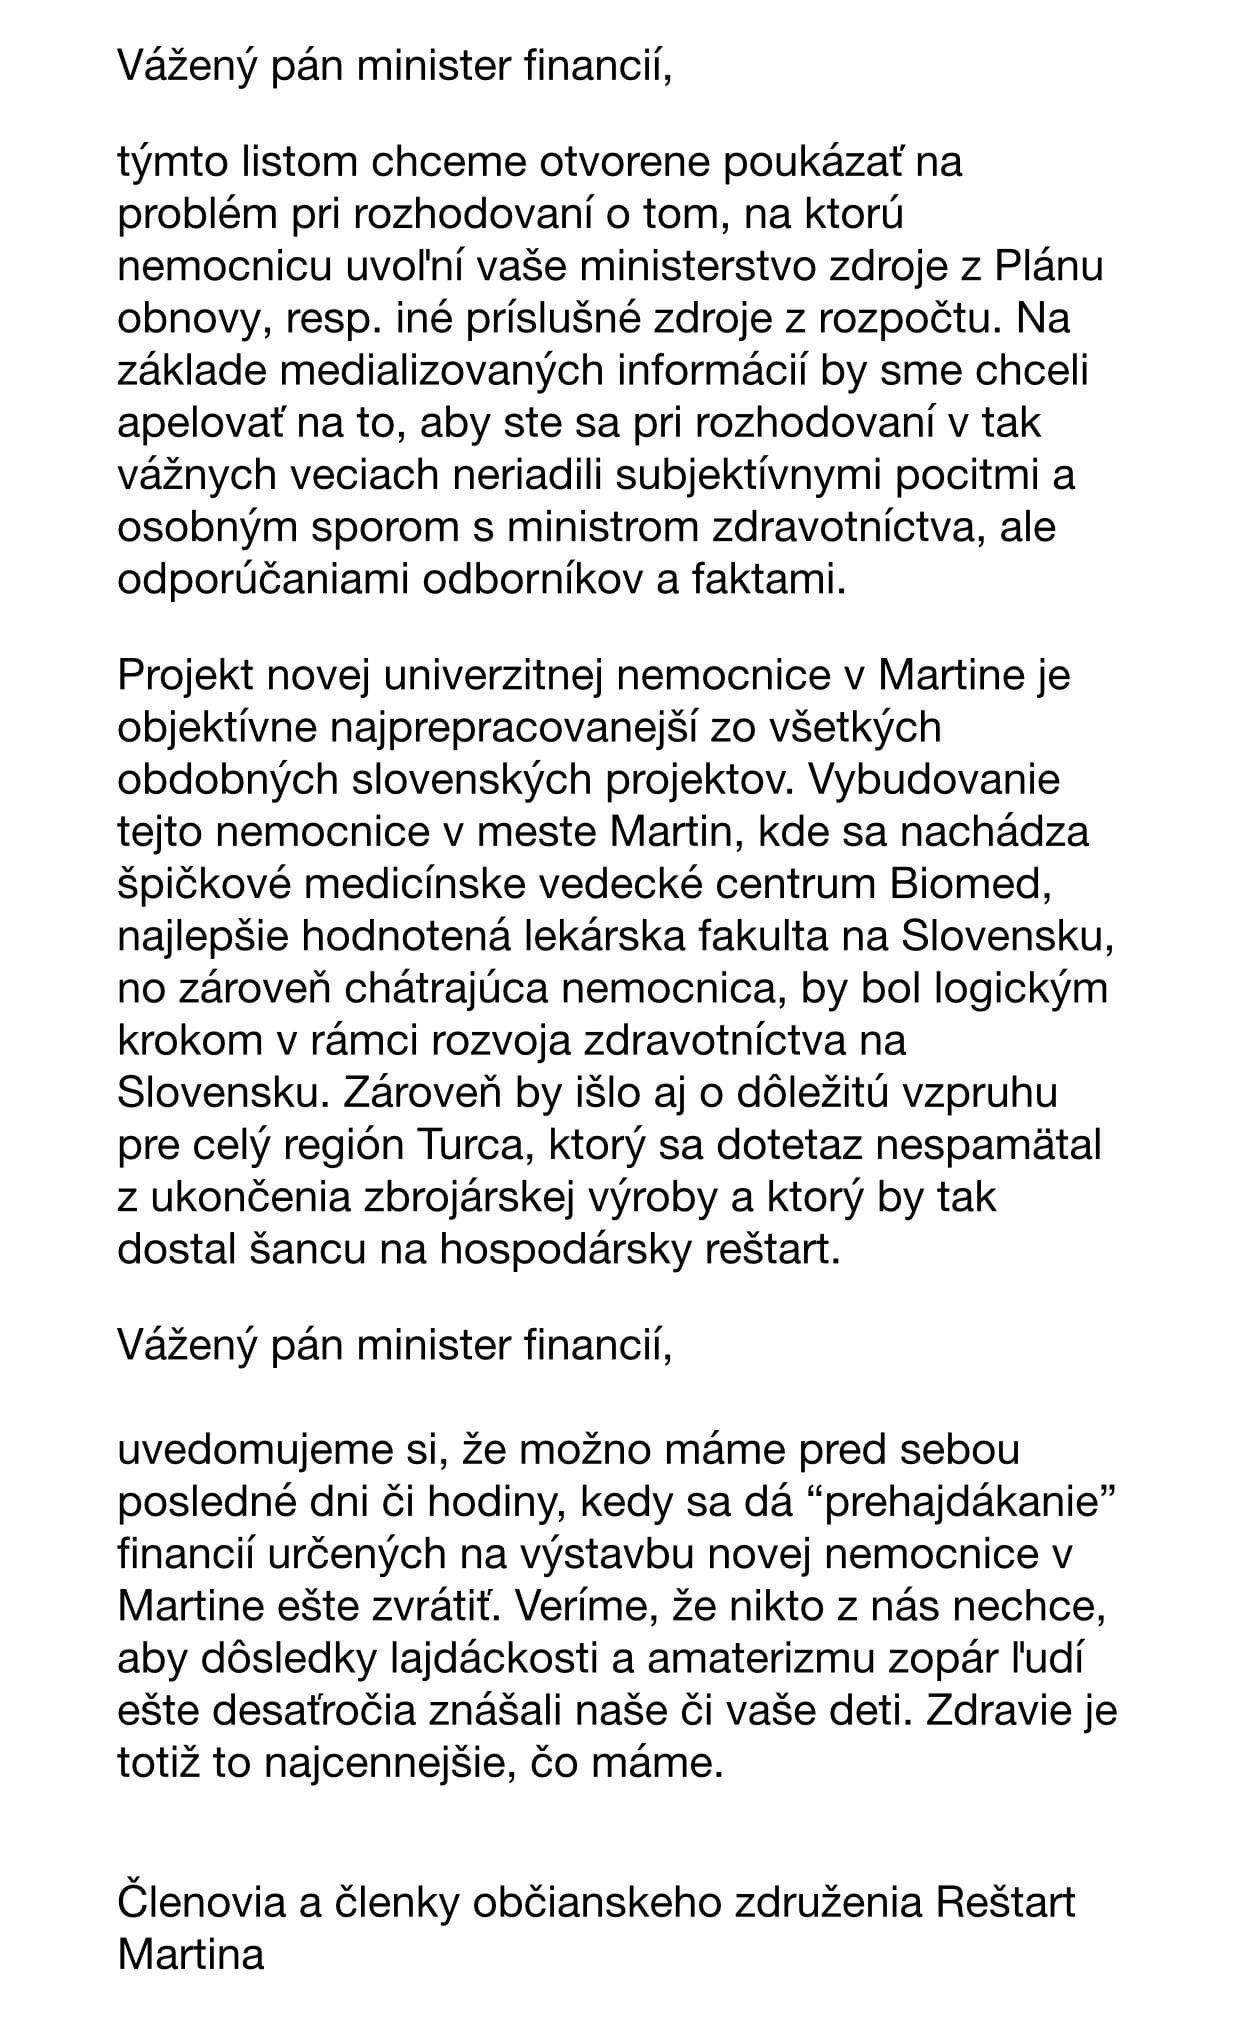 Otvorený list Igorovi Matovičovi.jpg